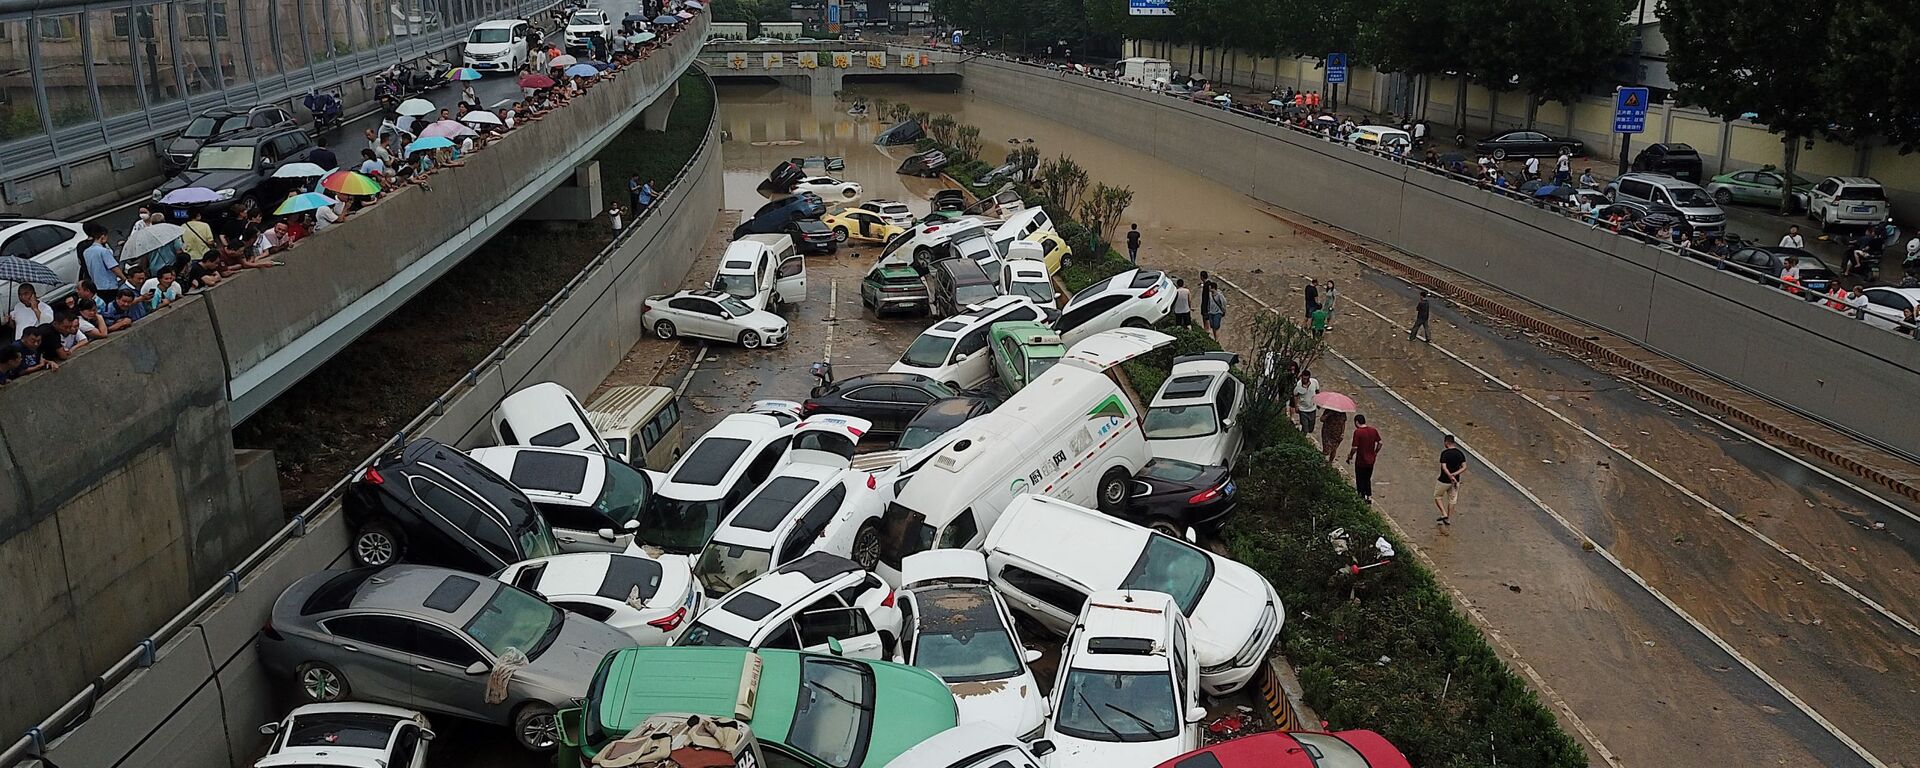 منظر جوي لآثار الفيضانات الناجمة عن أمطار غزيرة في مدينة تشنغتشو، وسط محافظة هينان، الصين 22 يوليو 2021 - سبوتنيك عربي, 1920, 22.08.2021